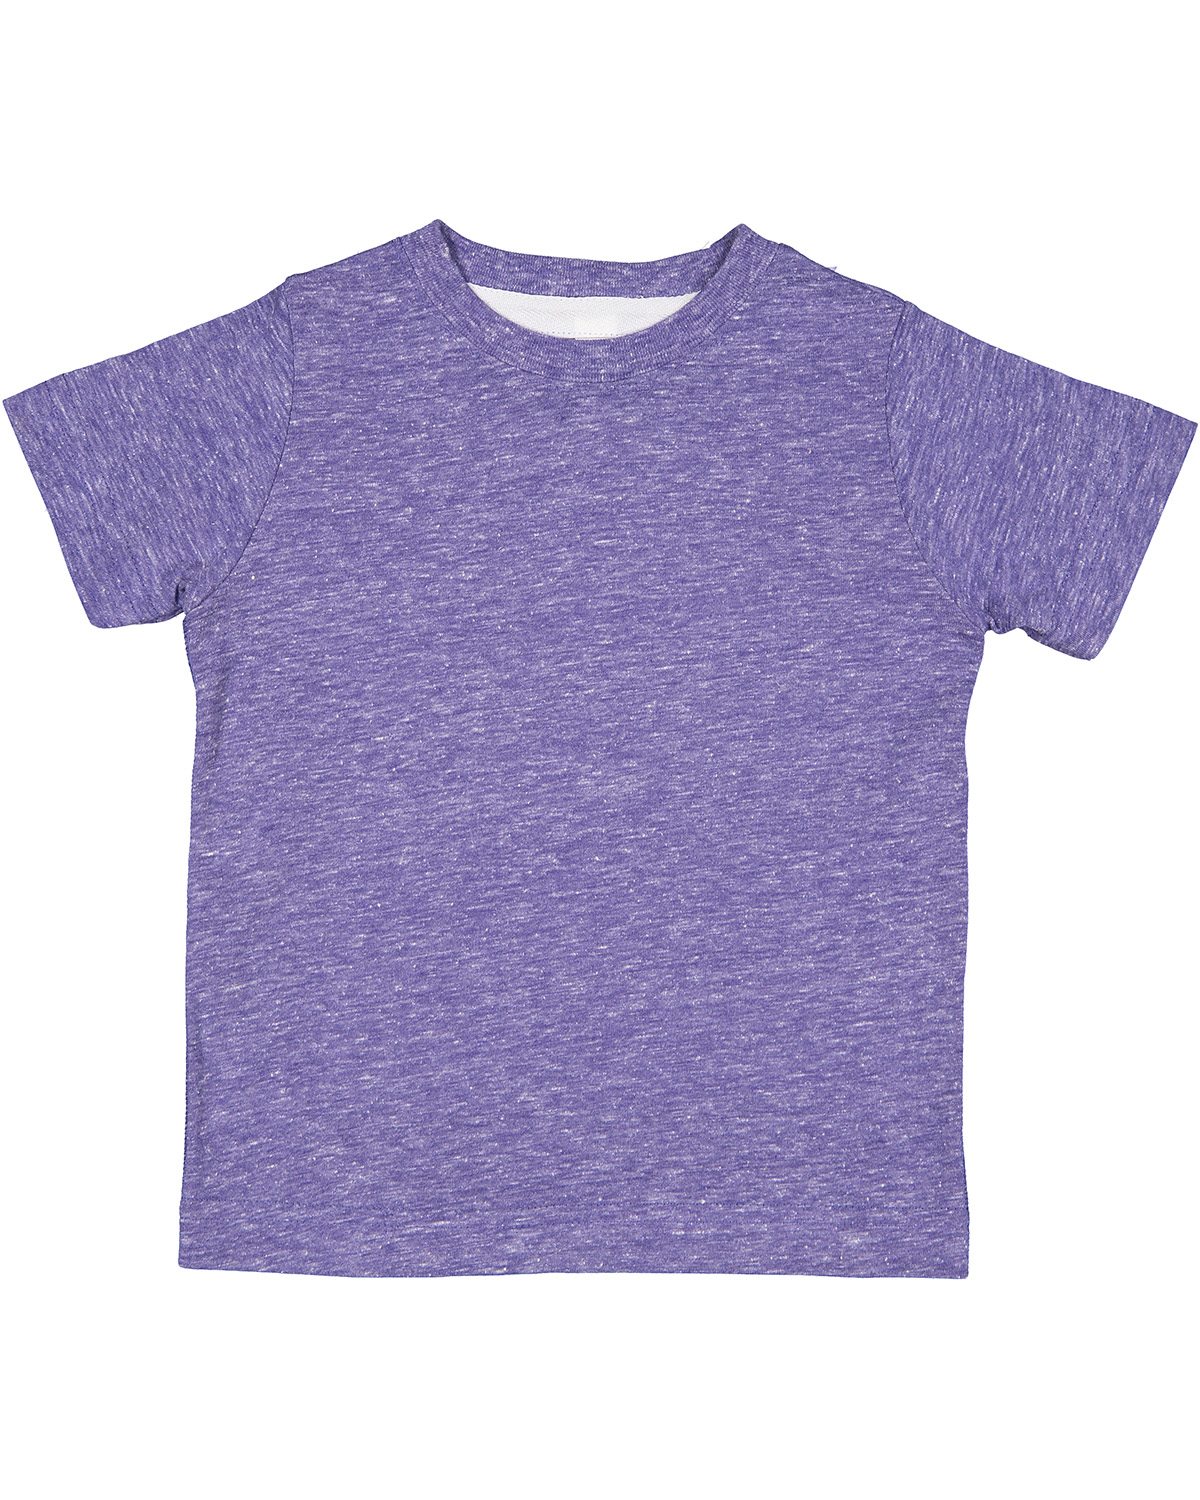 Rabbit Skins 3391 Ra Toddler Harborside Melange T Shirt | Jiffy Shirts